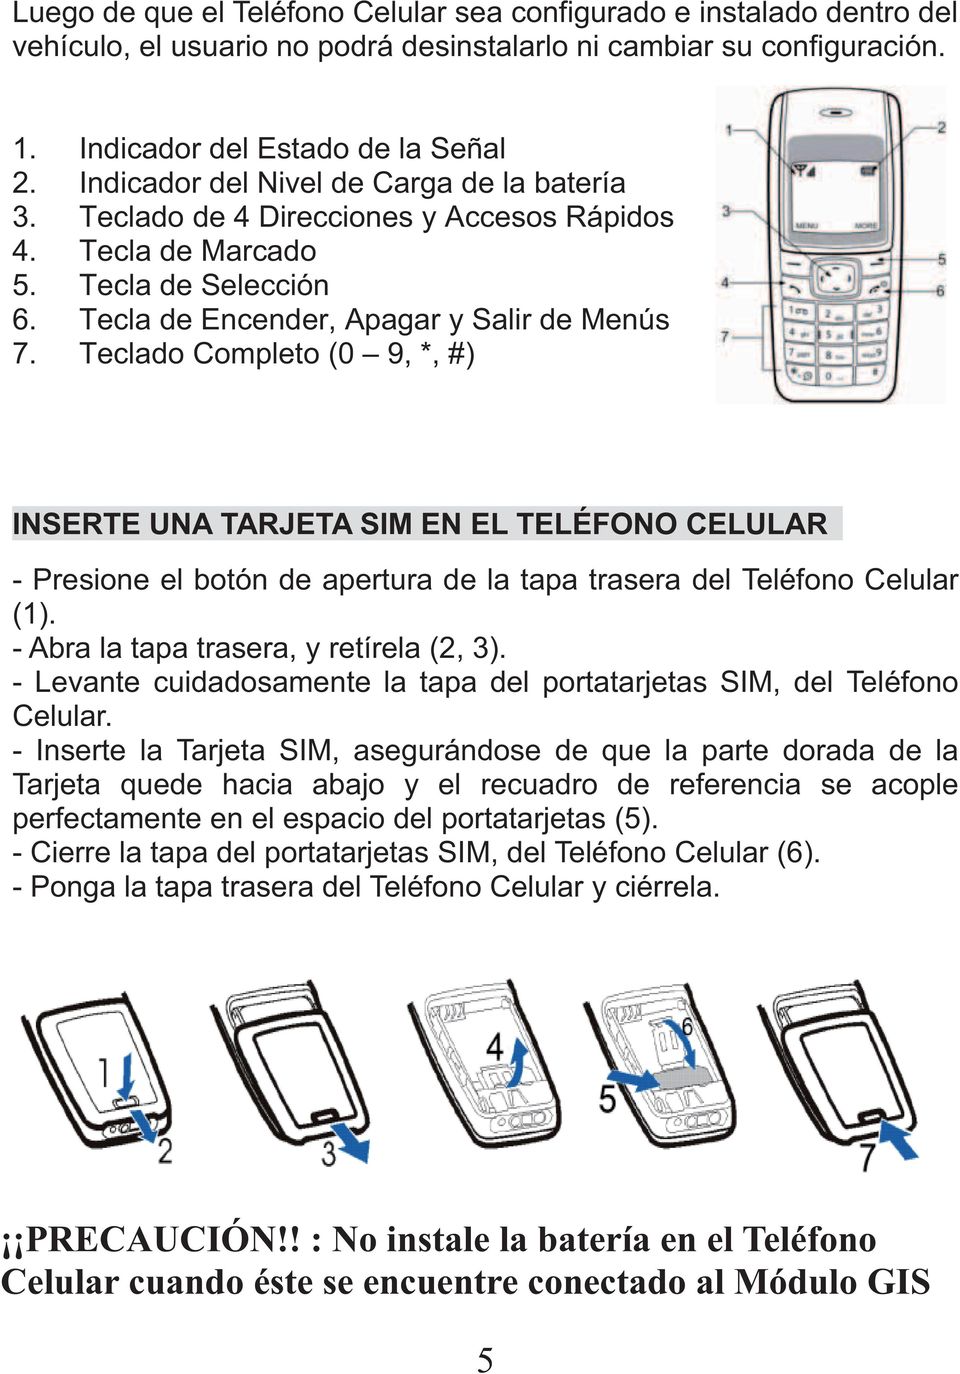 Teclado Completo (0 9, *, #) INSERTE UNA TARJETA SIM EN EL TELÉFONO CELULAR - Presione el botón de apertura de la tapa trasera del Teléfono Celular (1). - Abra la tapa trasera, y retírela (2, 3).